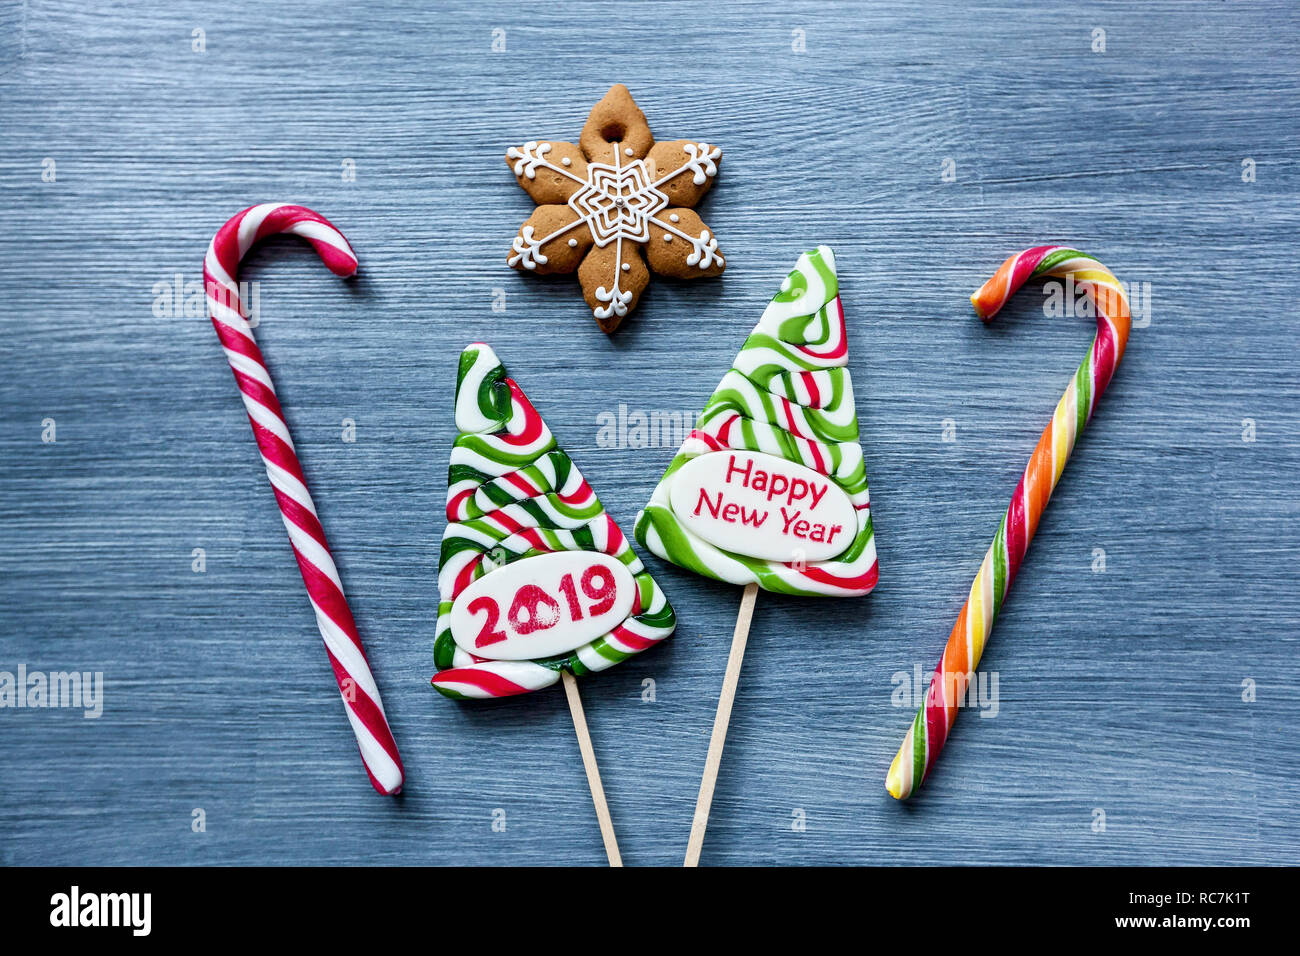 Sucettes bonbons colorés de sucreries à la nouvelle année sur un fond bleu. Arbre de Noël, bonhomme, cochon et sucettes. Sweet sucker Banque D'Images